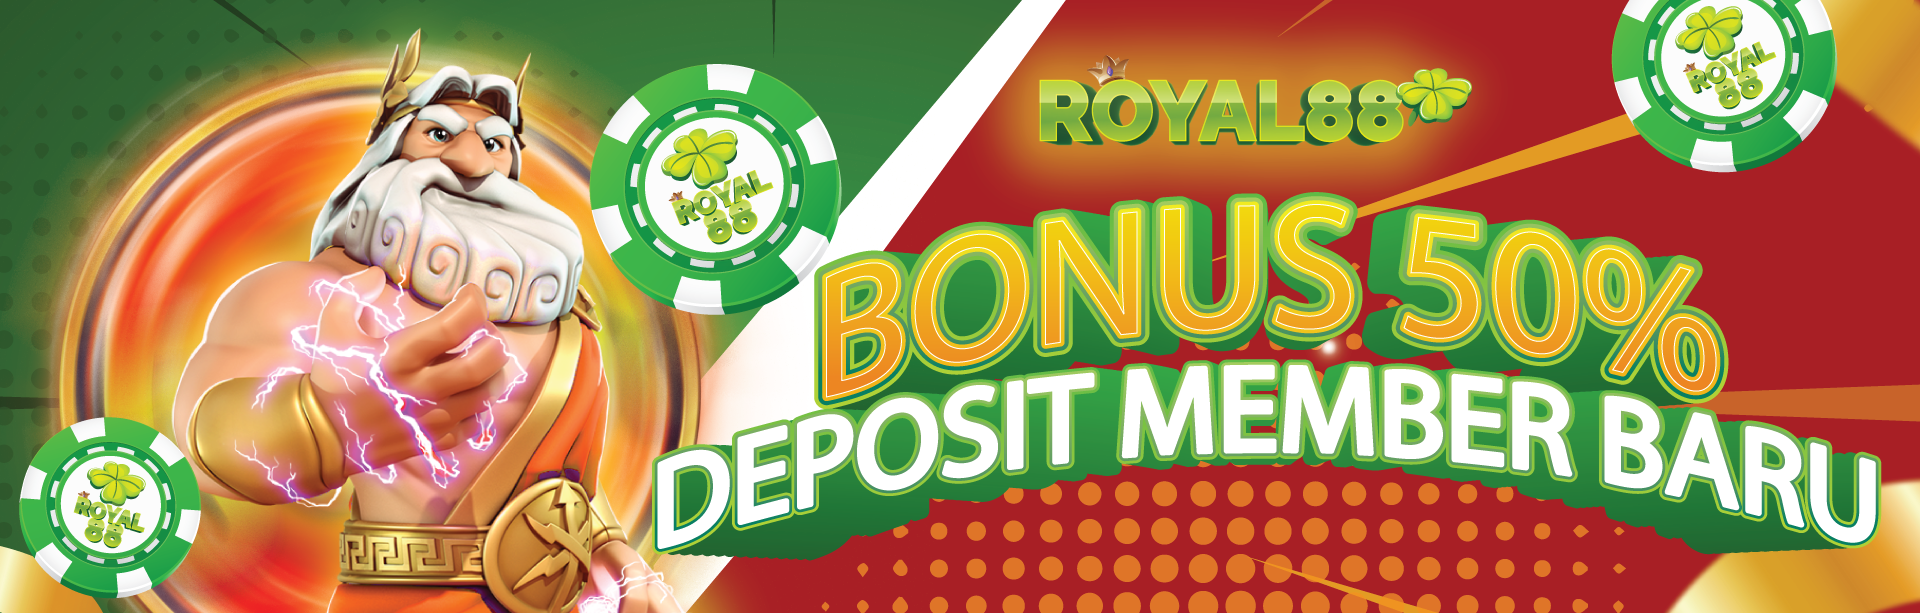 Welcome Royal88 Bonus 50%